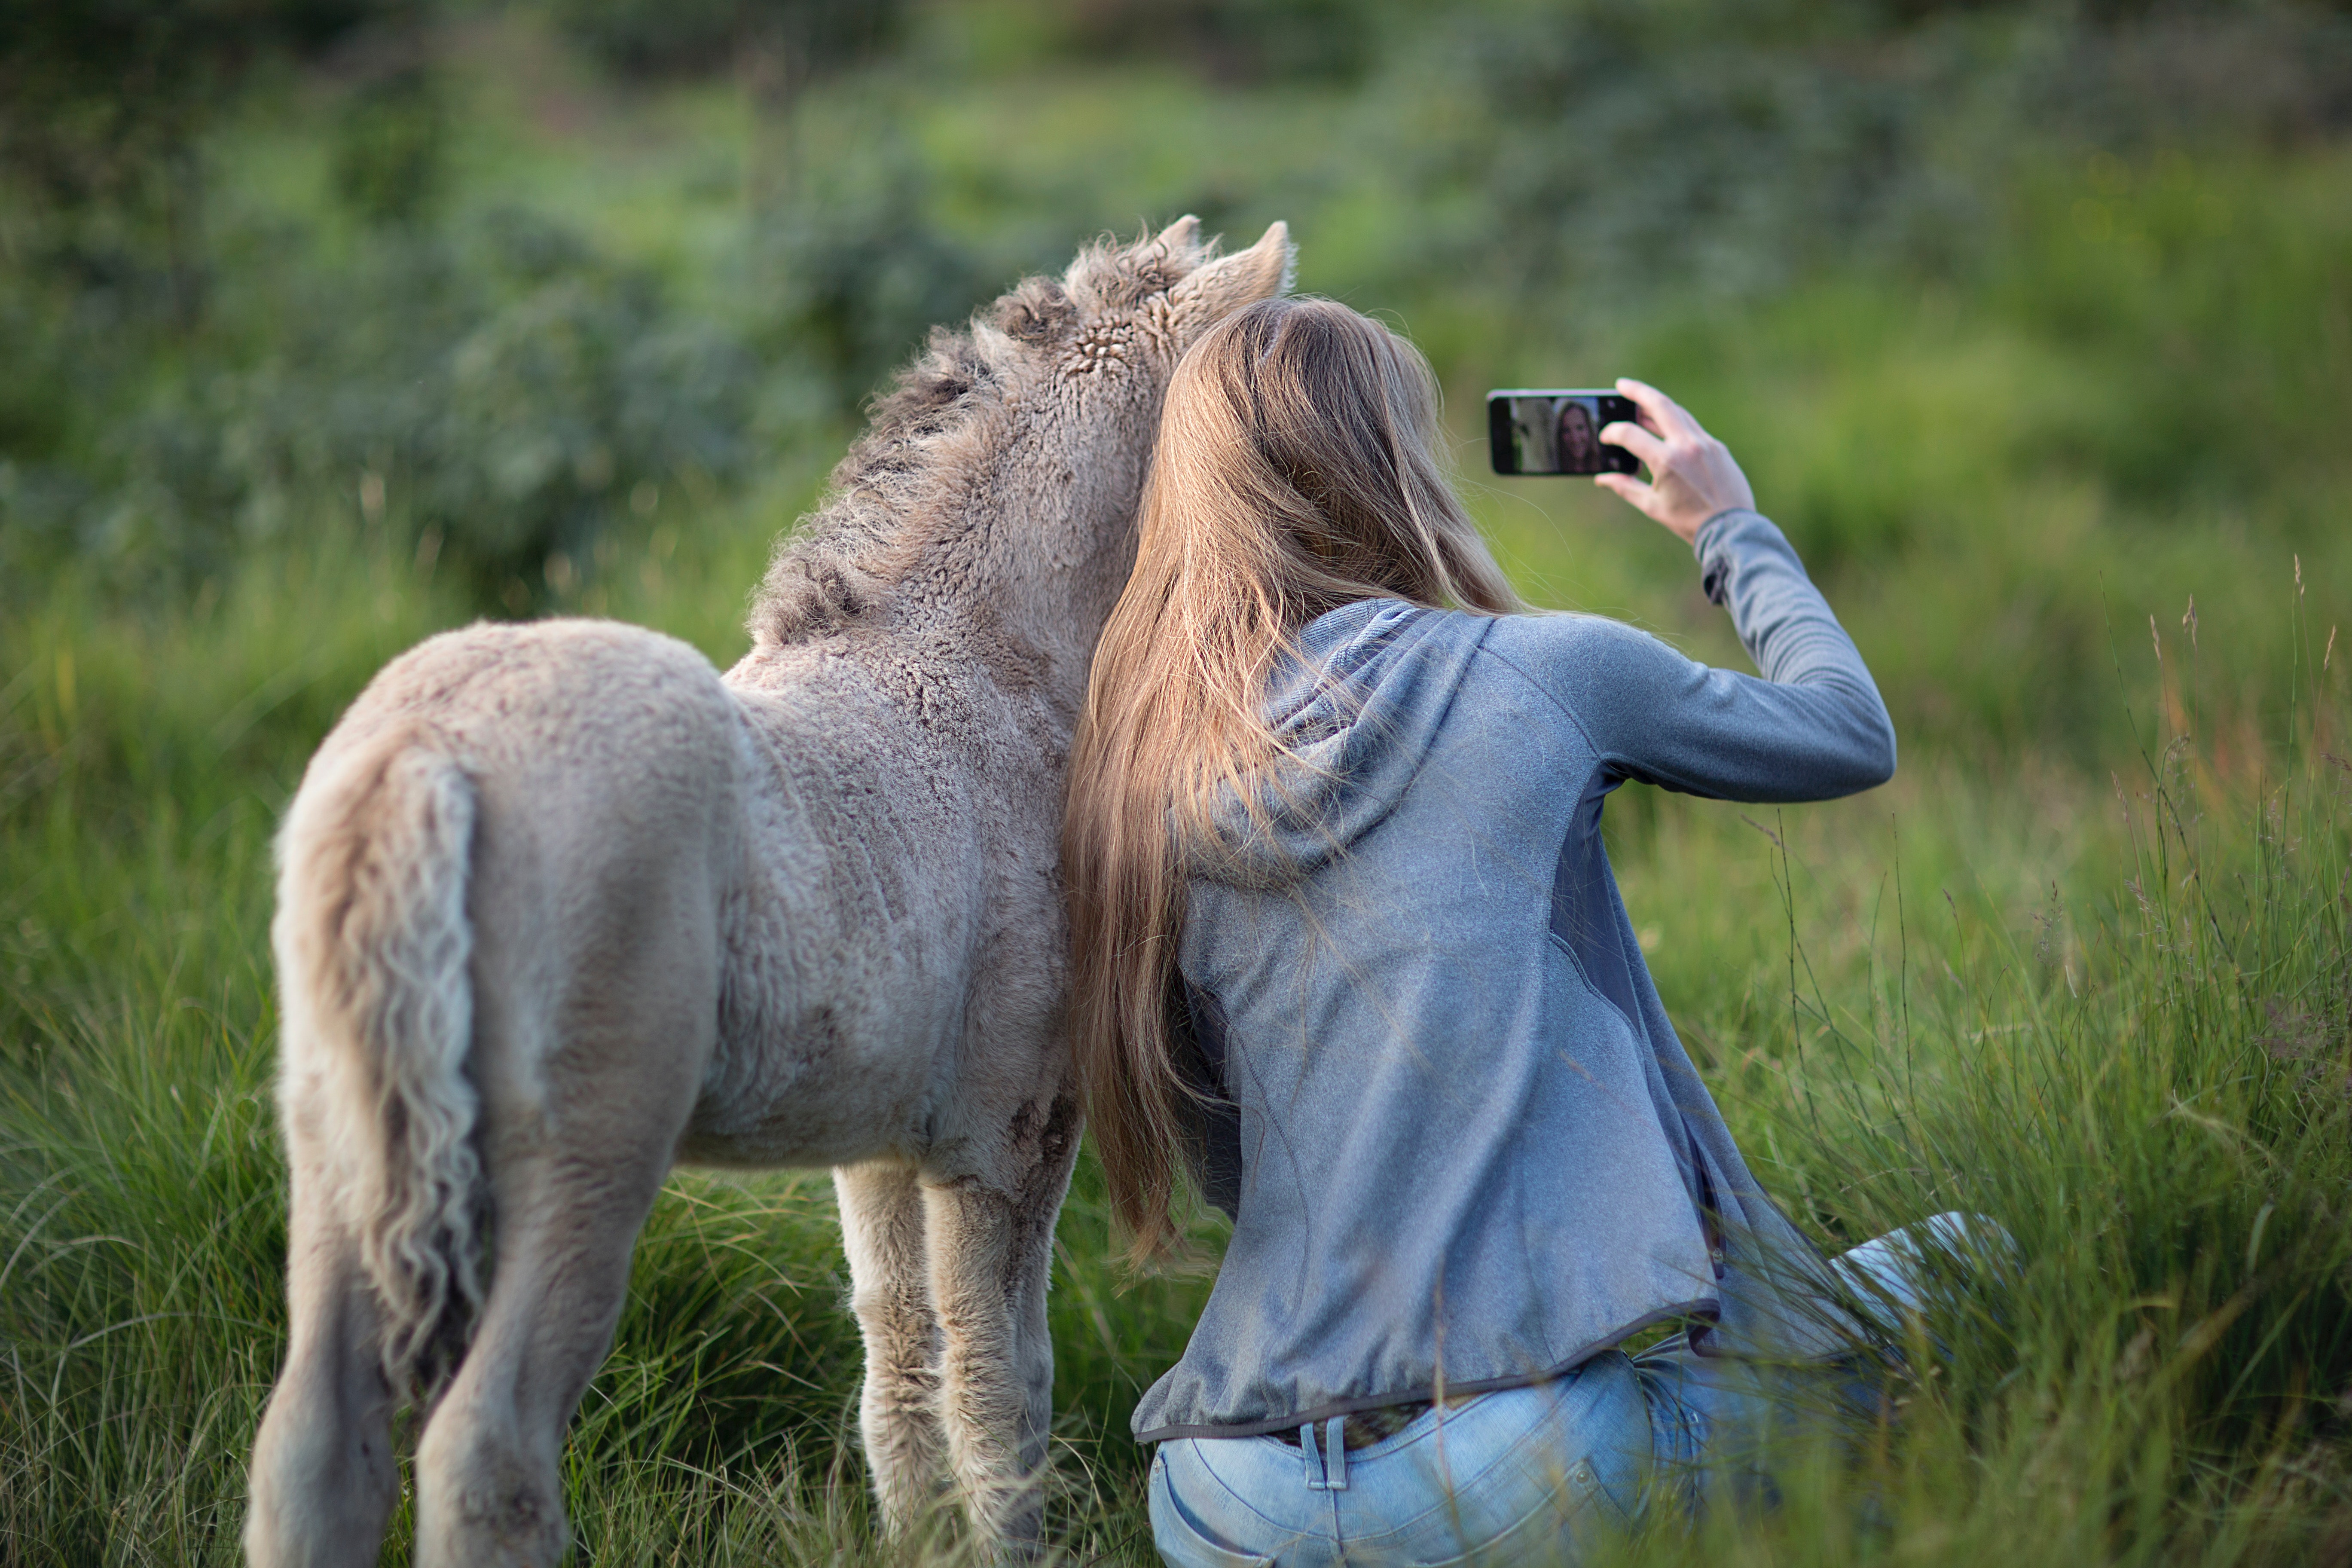 Woman beside donkey taking selfie on grass photo